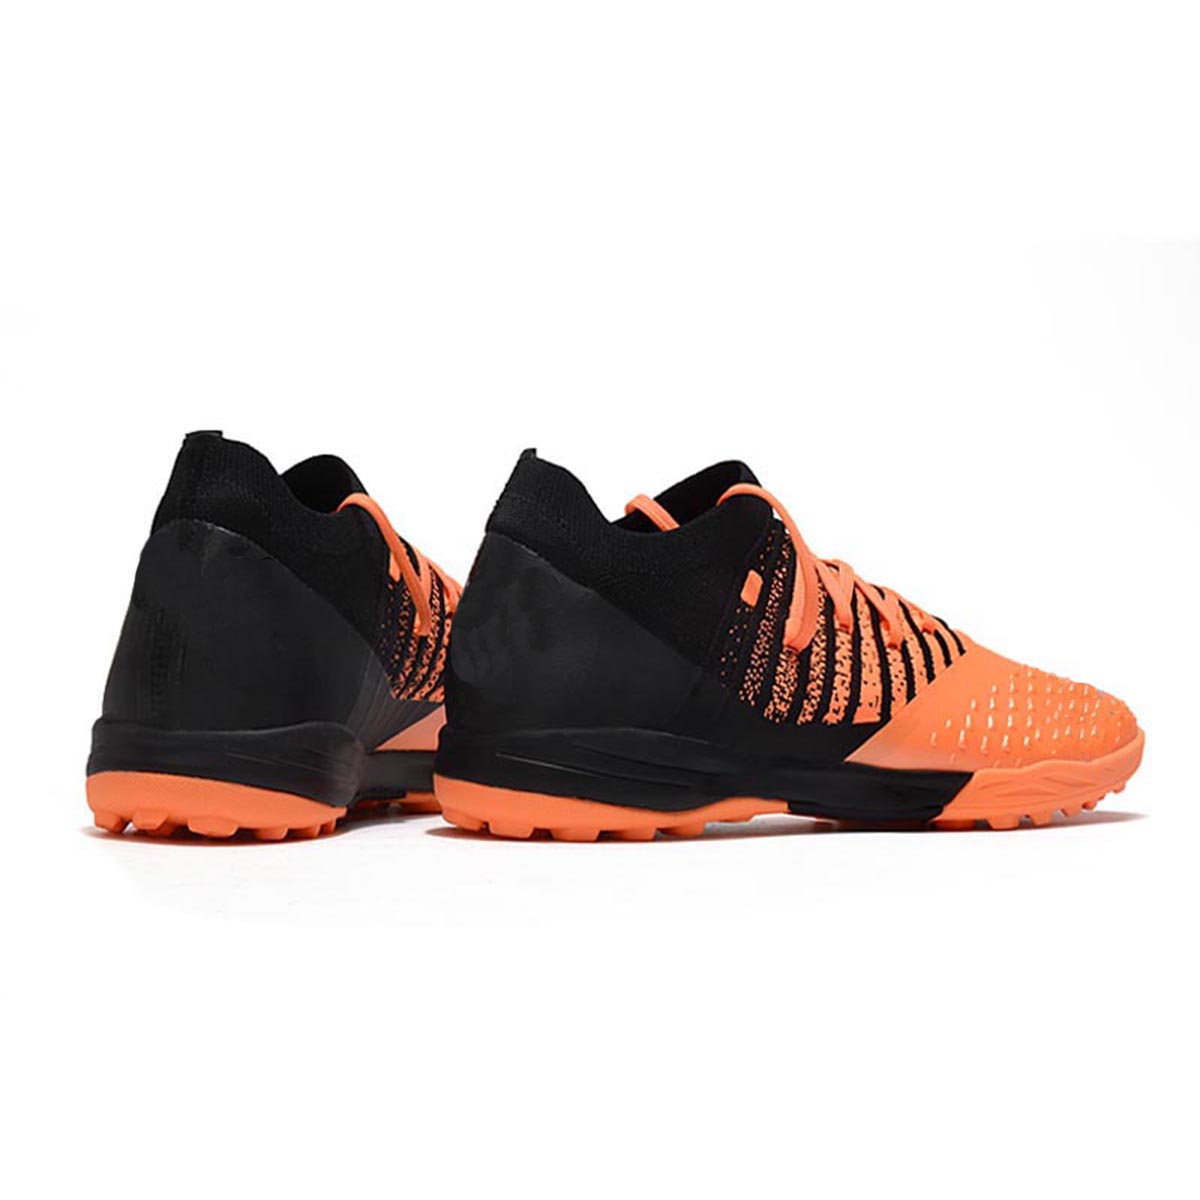 Giày đá bóng Future Z1.3 đinh TF màu cam đen